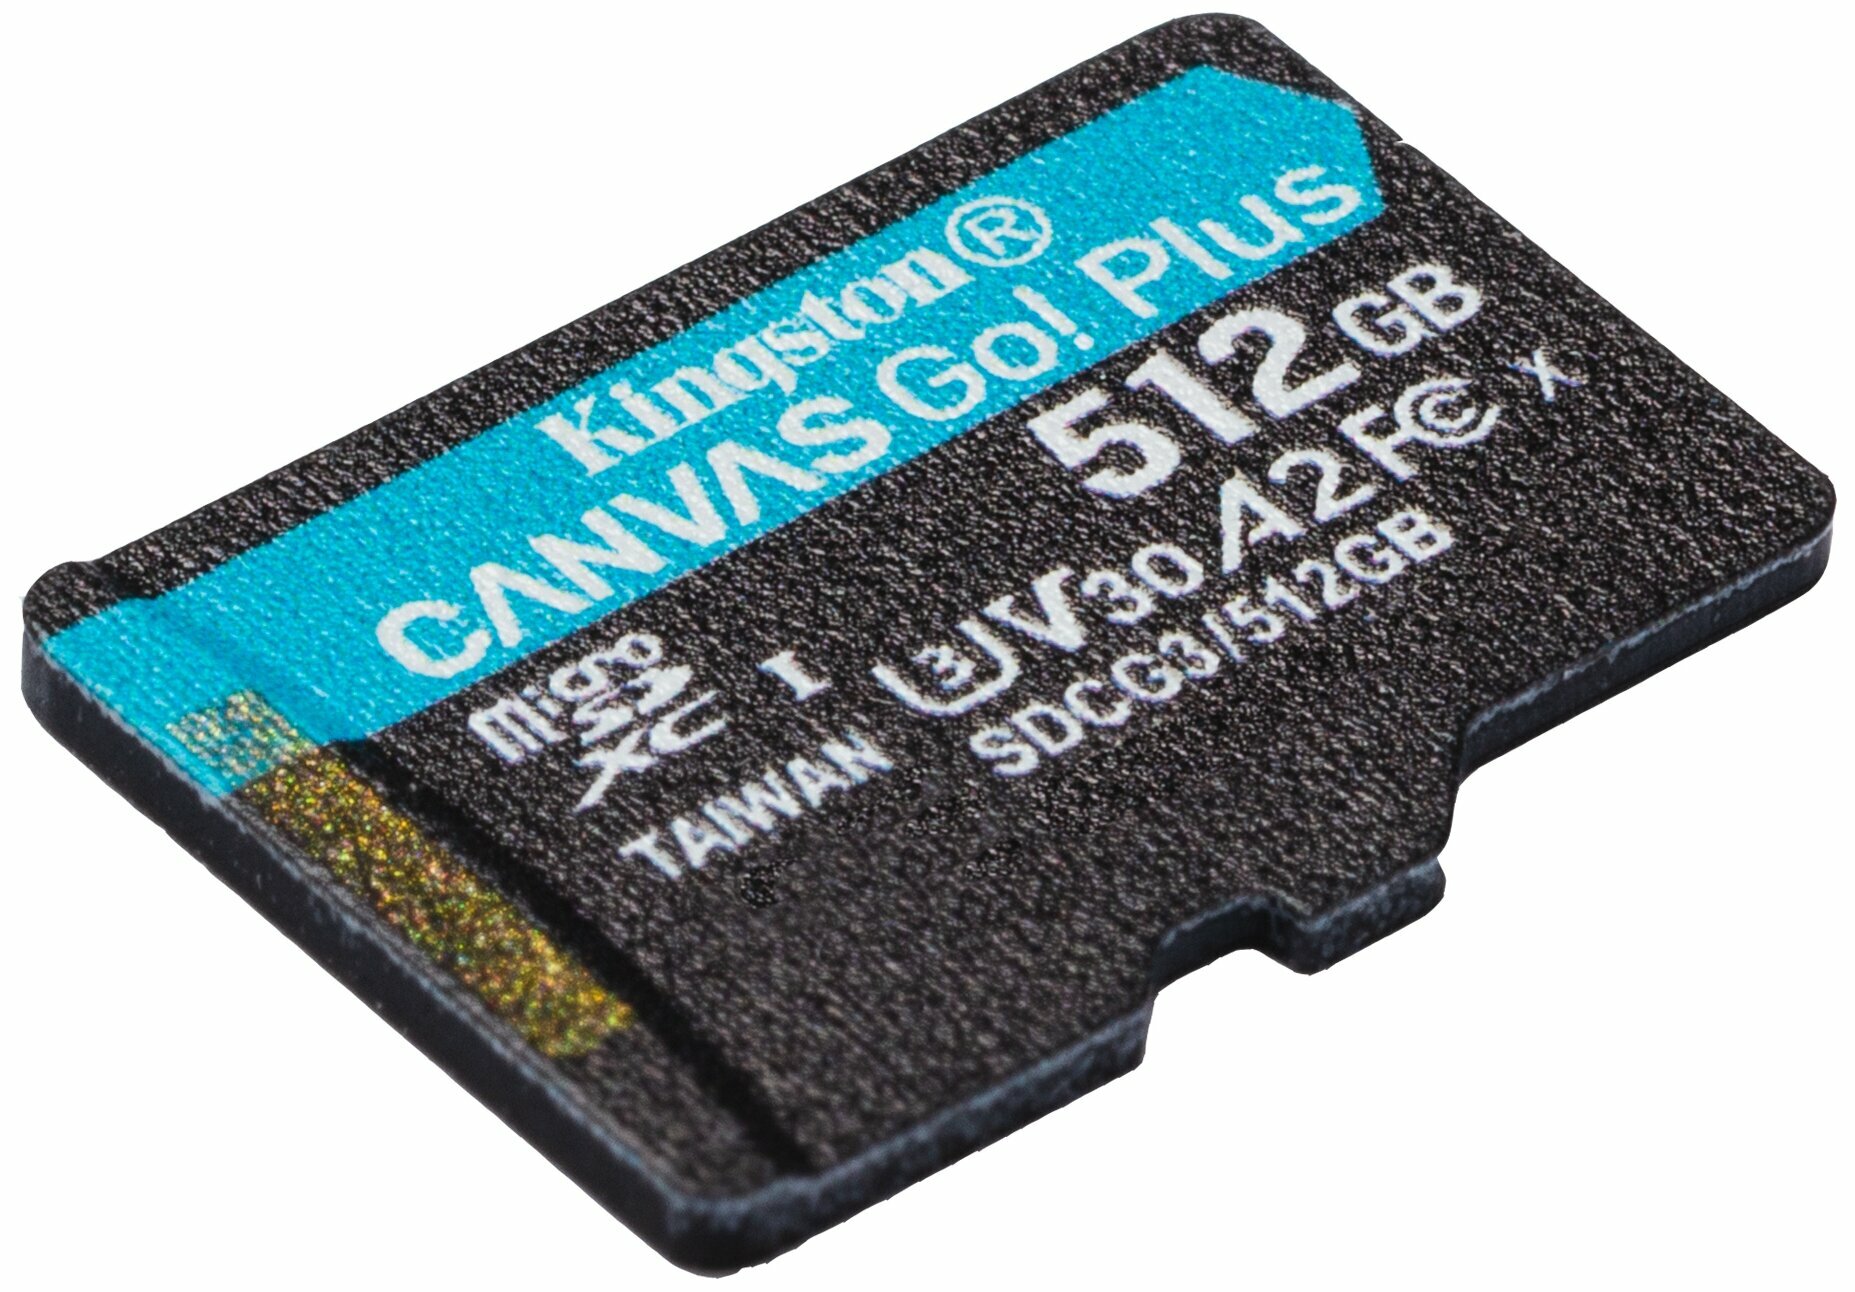 Флеш карта microSD 512GB Kingston microSDXC Class 10 UHS-I U3 V30 Canvas Go Plus 170MB/s